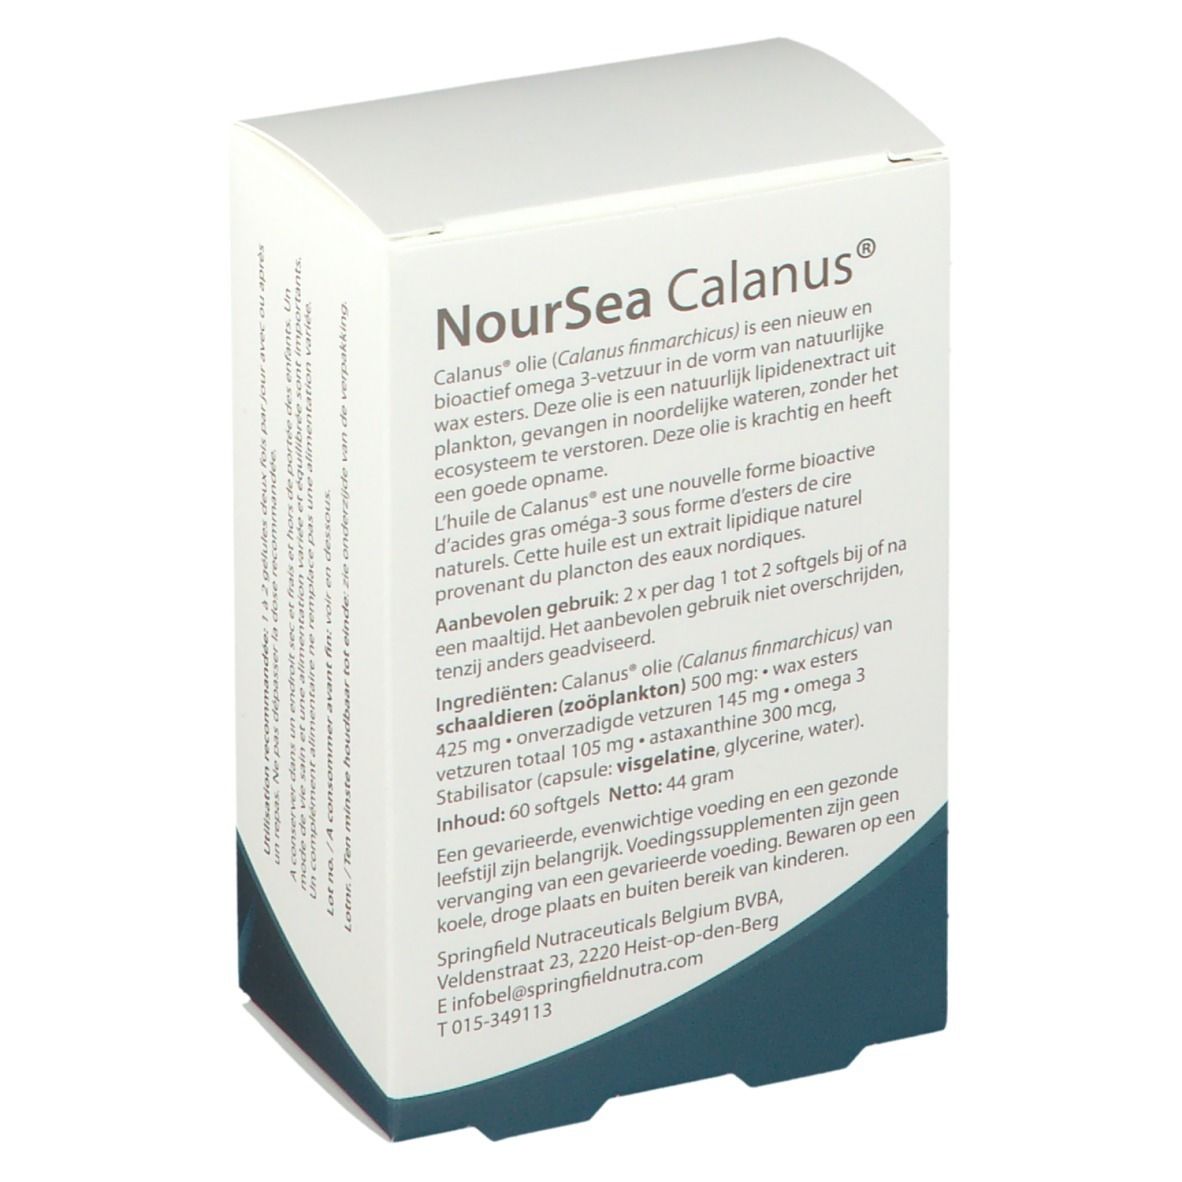 Springfield NourSea Calanus Huile 500 mg